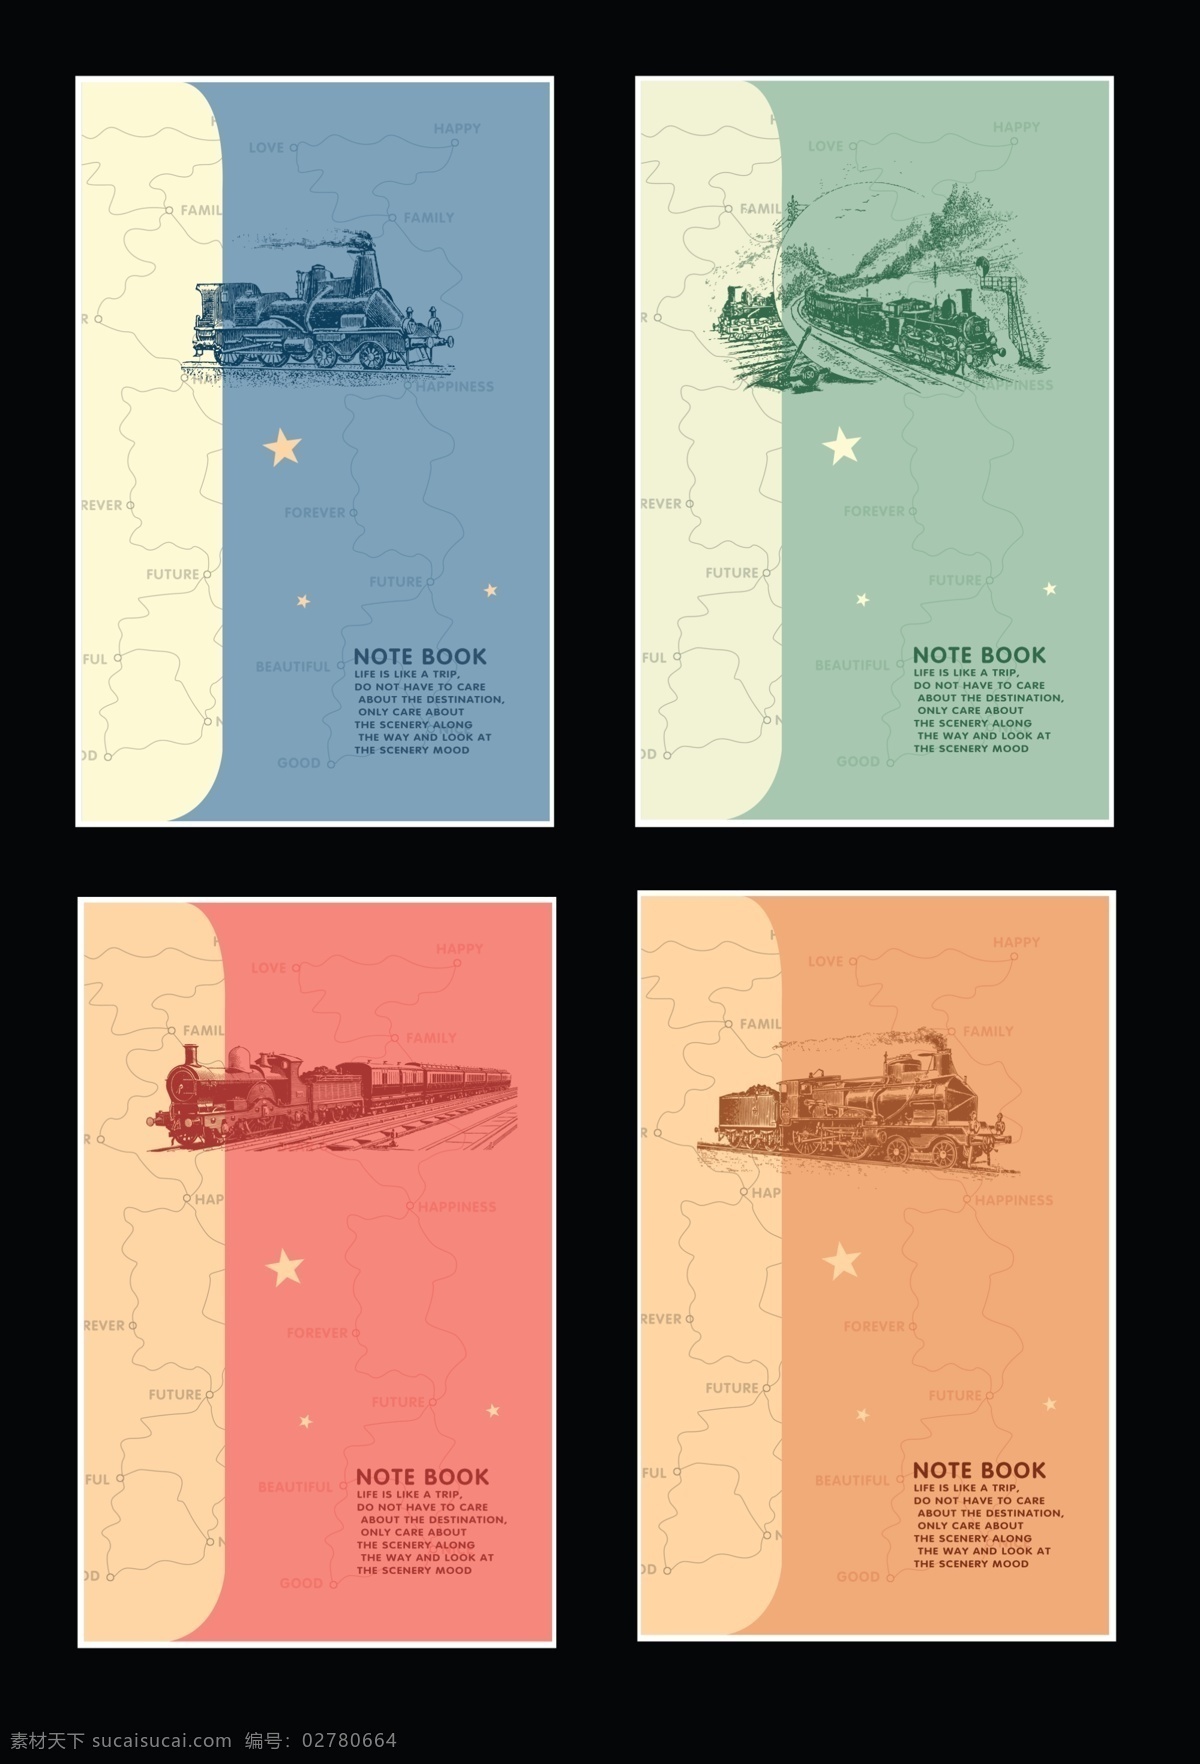 旅行 本子 旅行本本 火车 路线 爱心 文化袋 老火车 画册设计 广告设计模板 源文件